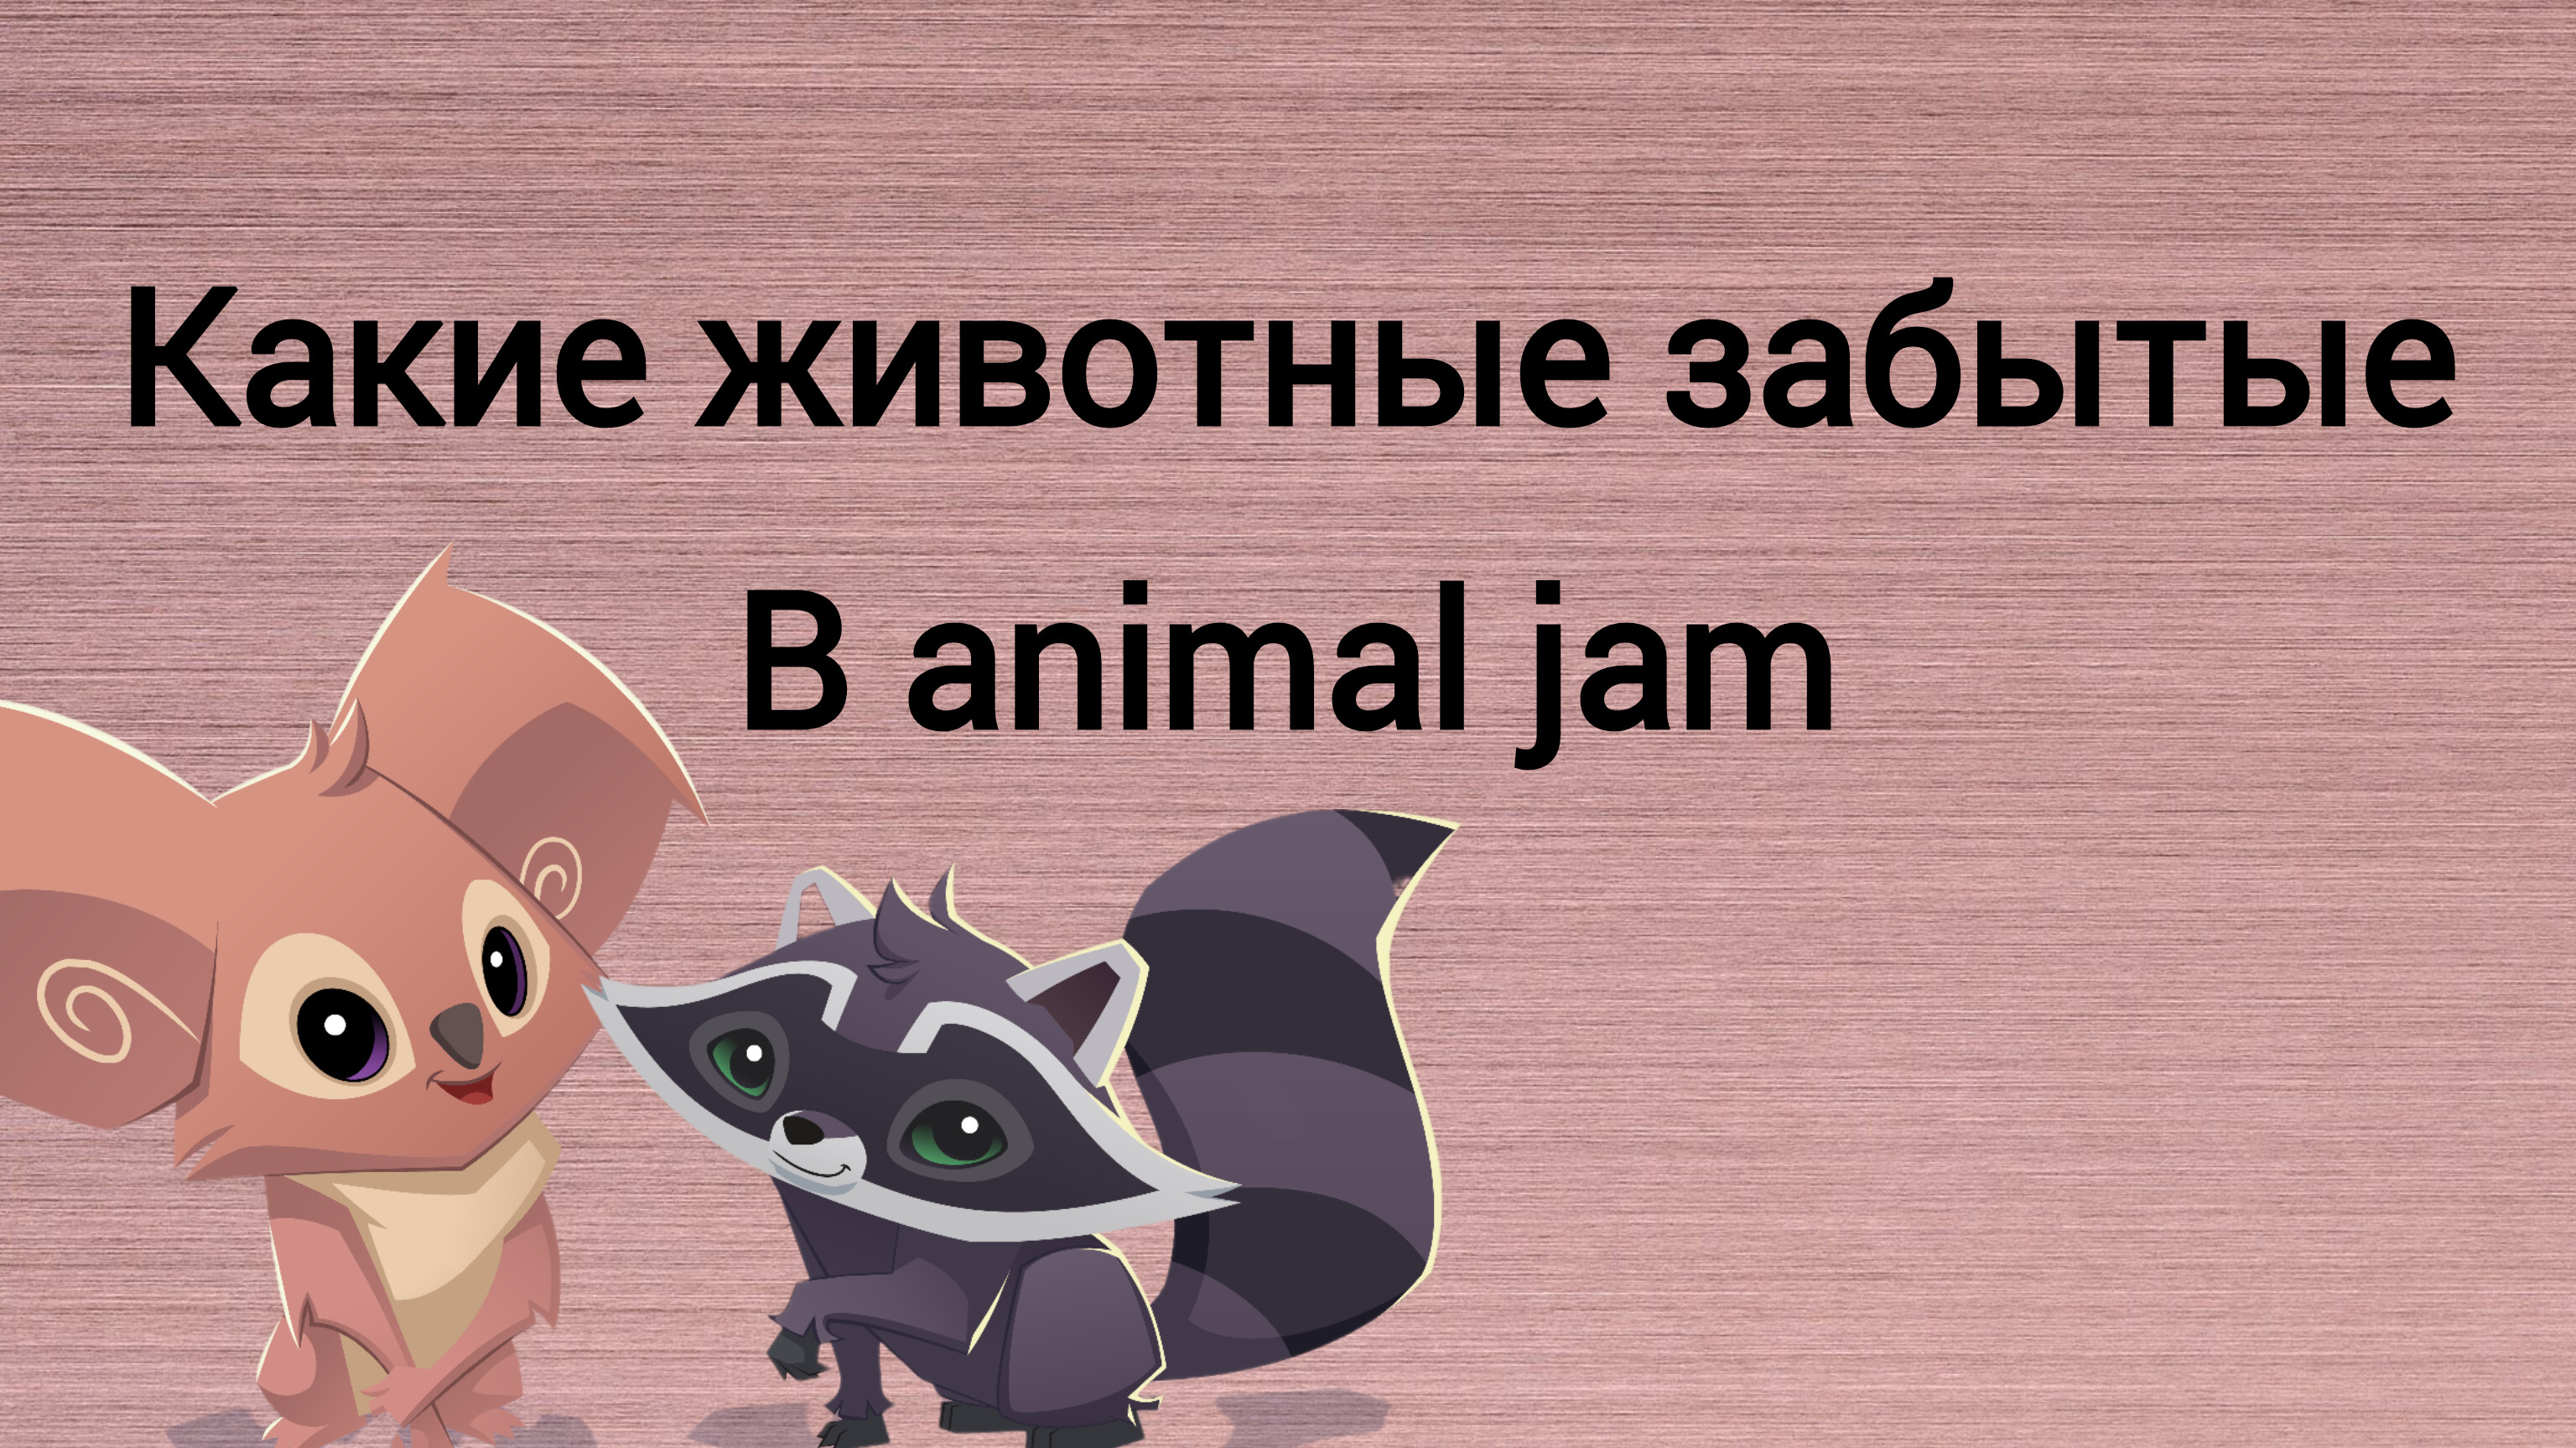 Какие животные забытые в animal jam?